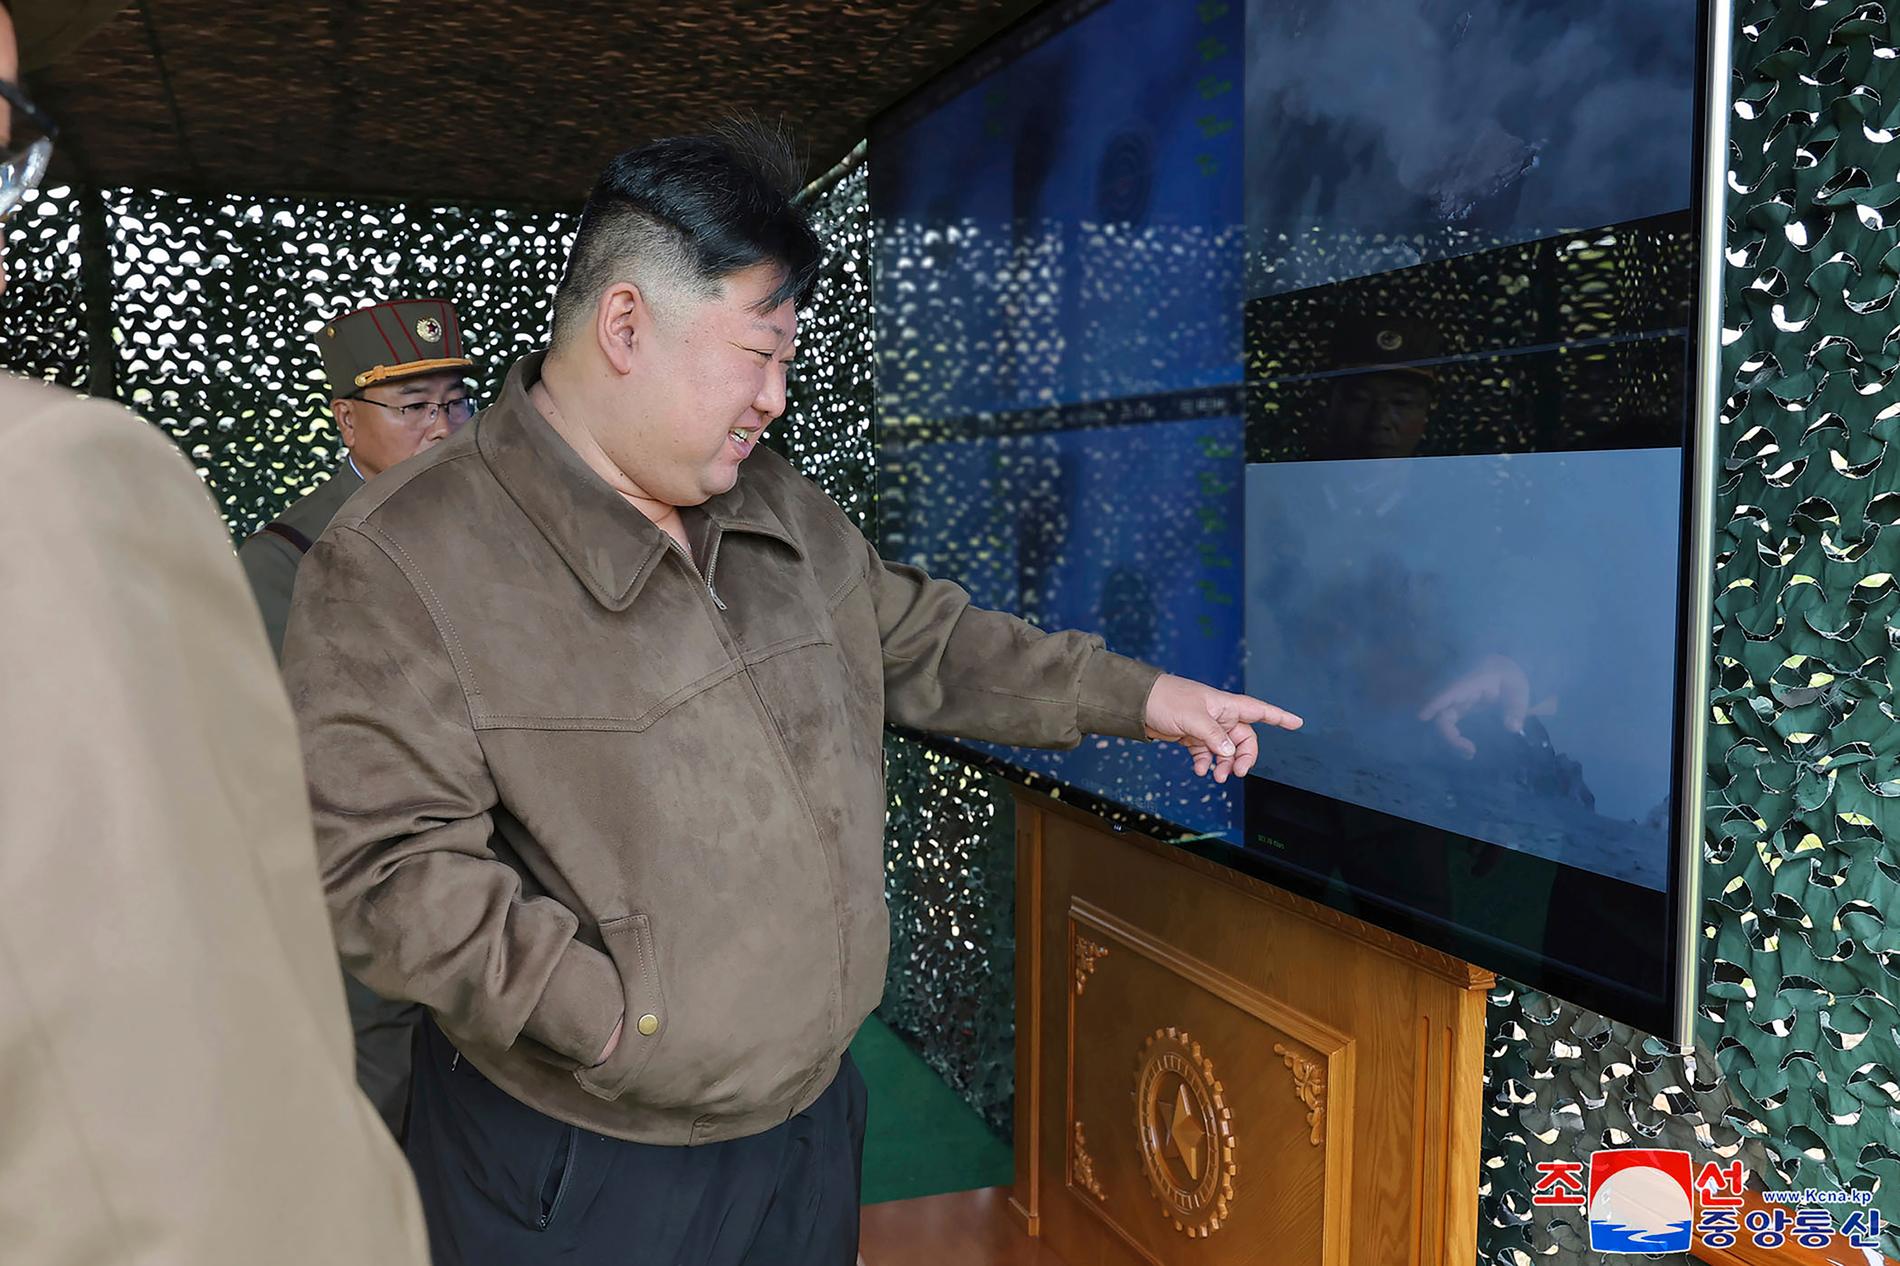 På bilden, som tillhandahållits av den Nordkoreanska regimen, ses ledaren Kim Jong-Un övervaka det som påstås vara en militärövning på en icke angiven plats i Nordkorea.